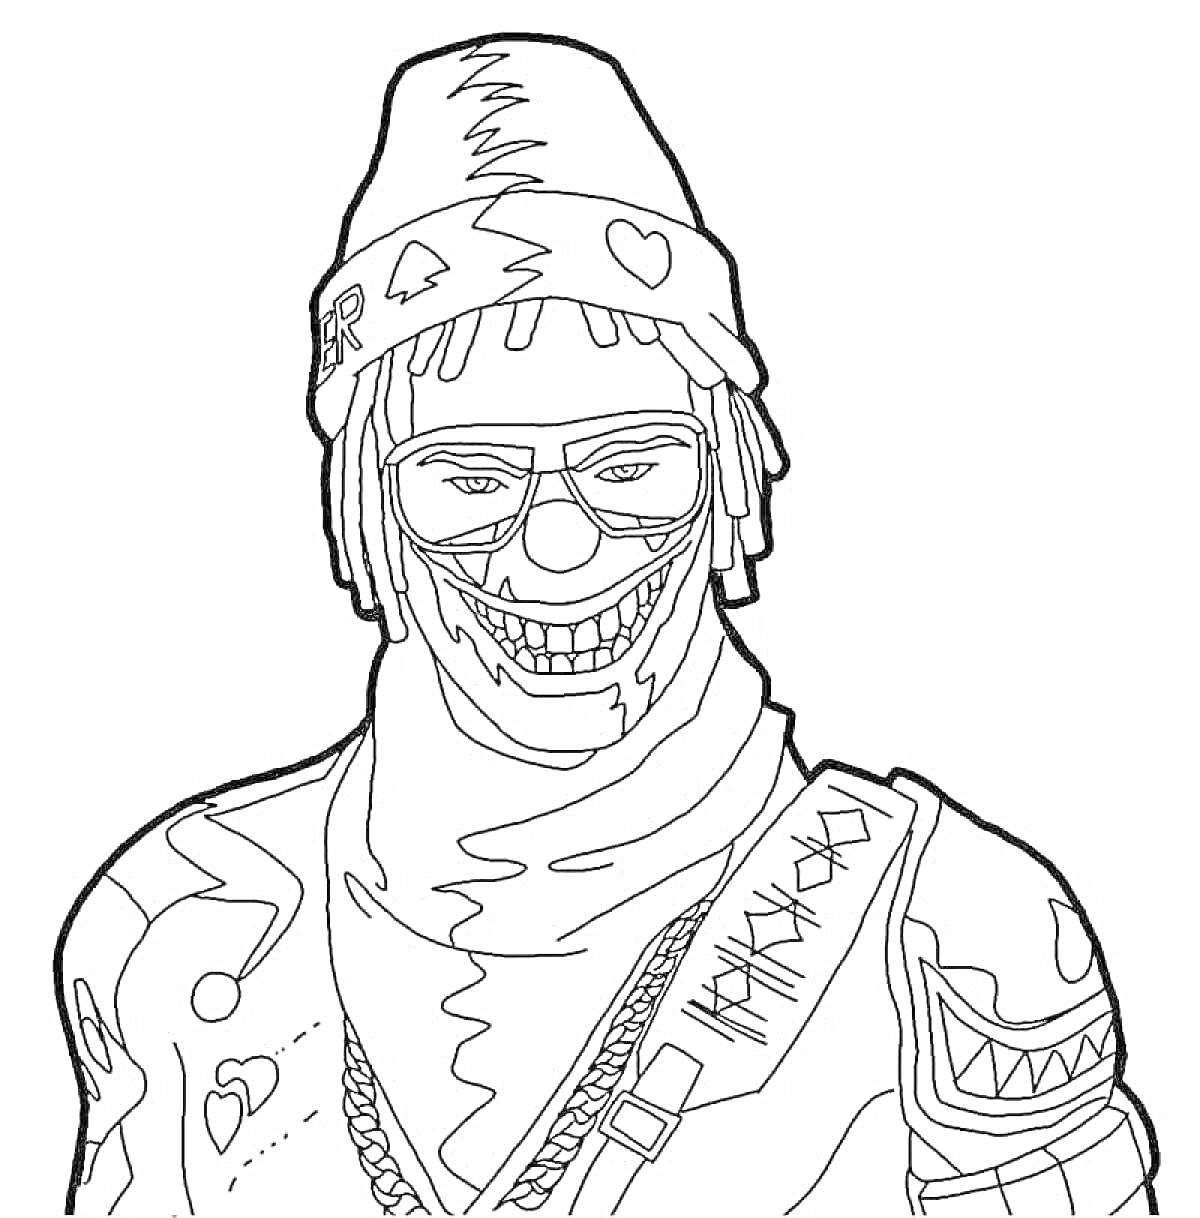 Раскраска Персонаж Free Fire в шапке с узором, очках и маске с улыбающимся рисунком